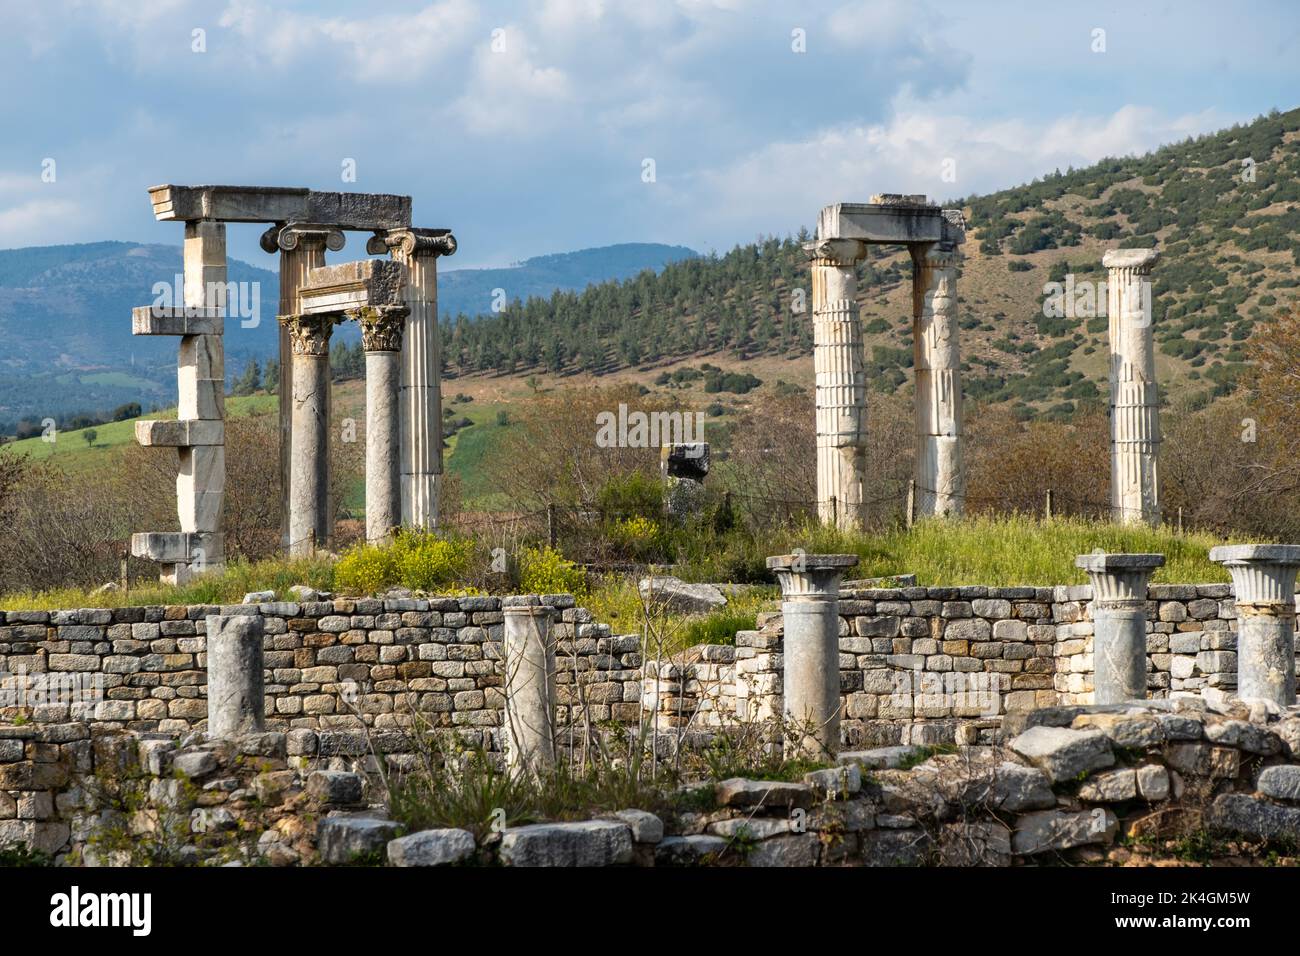 La antigua ciudad de Afrodisias. Sitios arqueológicos e históricos de la Turquía moderna Foto de stock